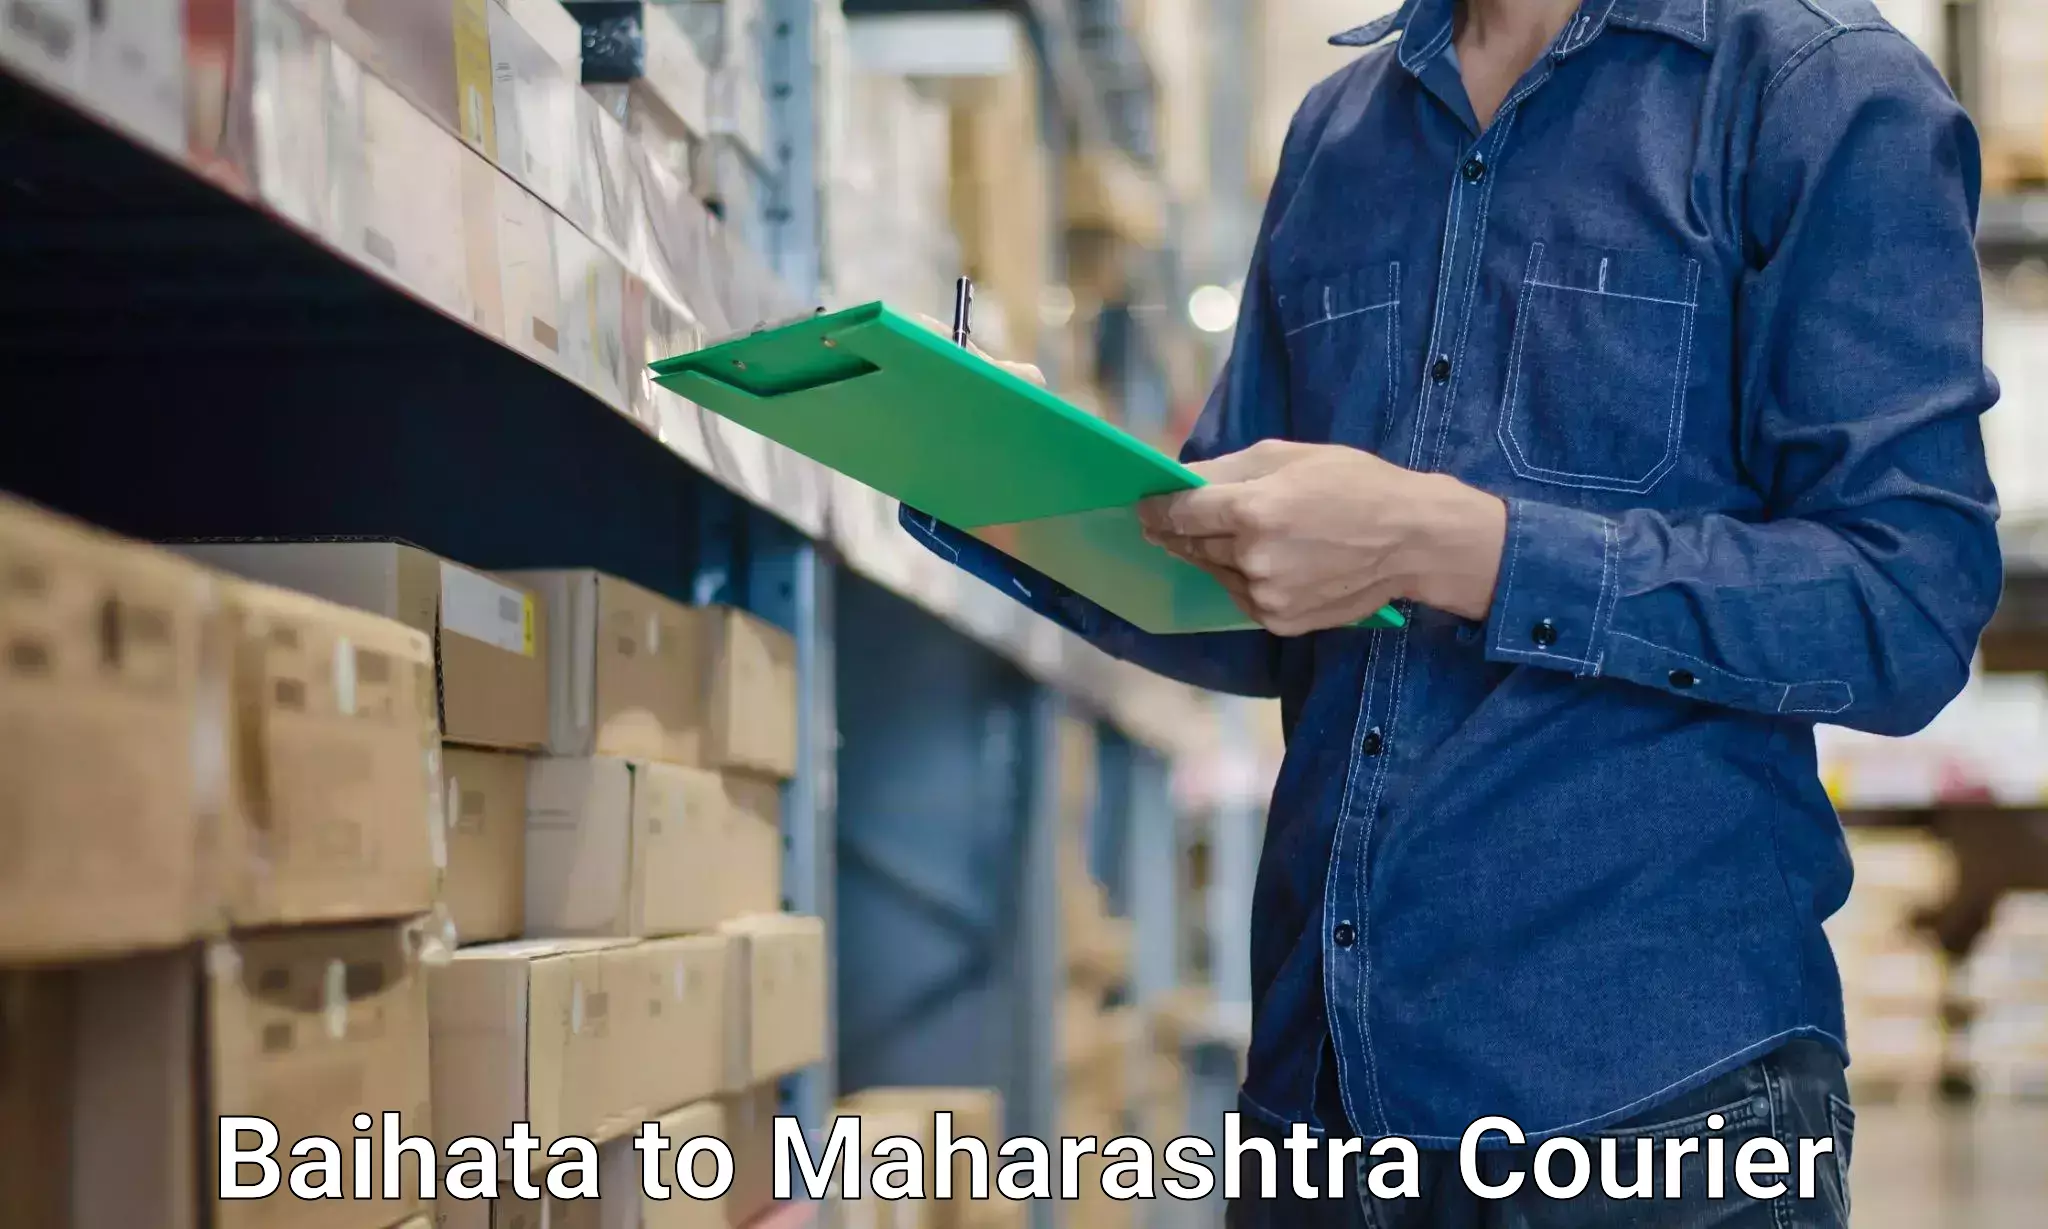 Home relocation experts Baihata to Maharashtra